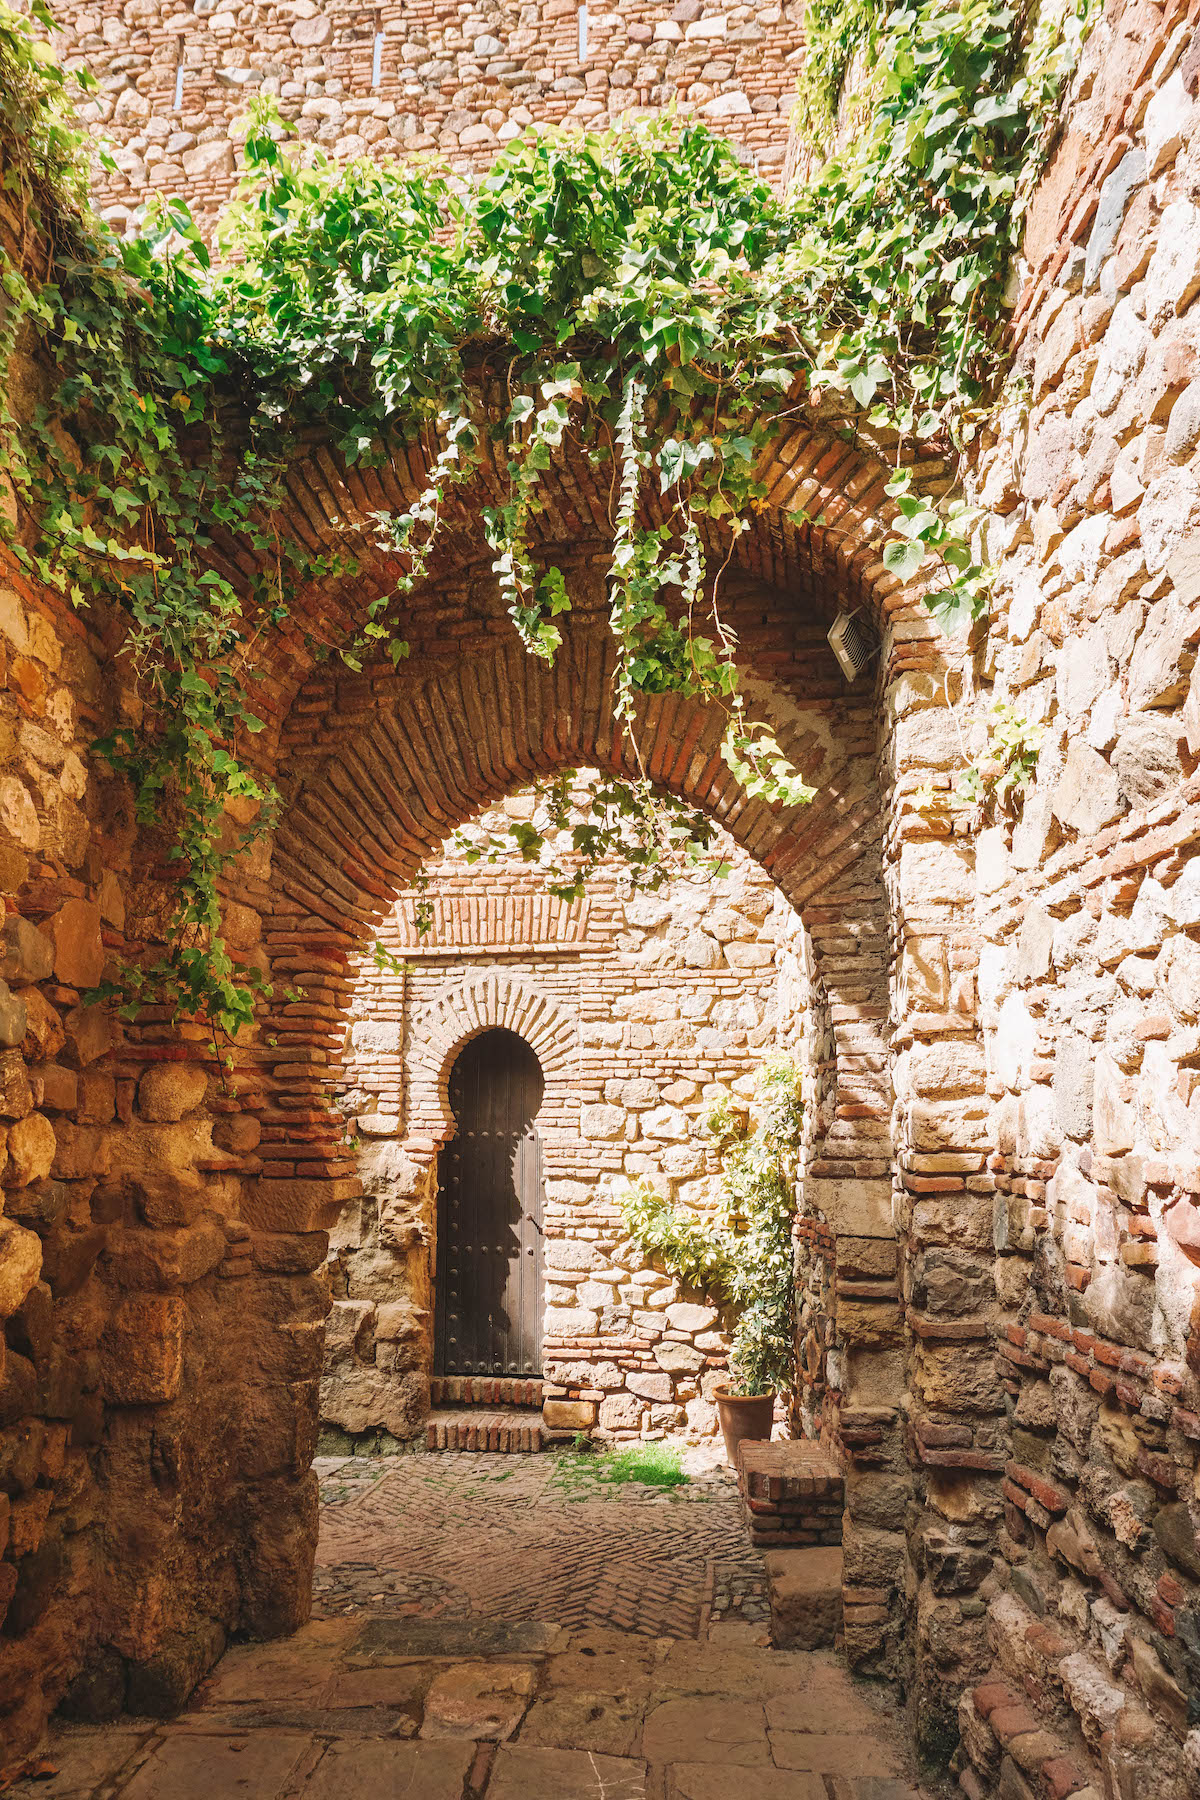 Inside the walls of the Alcazaba of Malaga